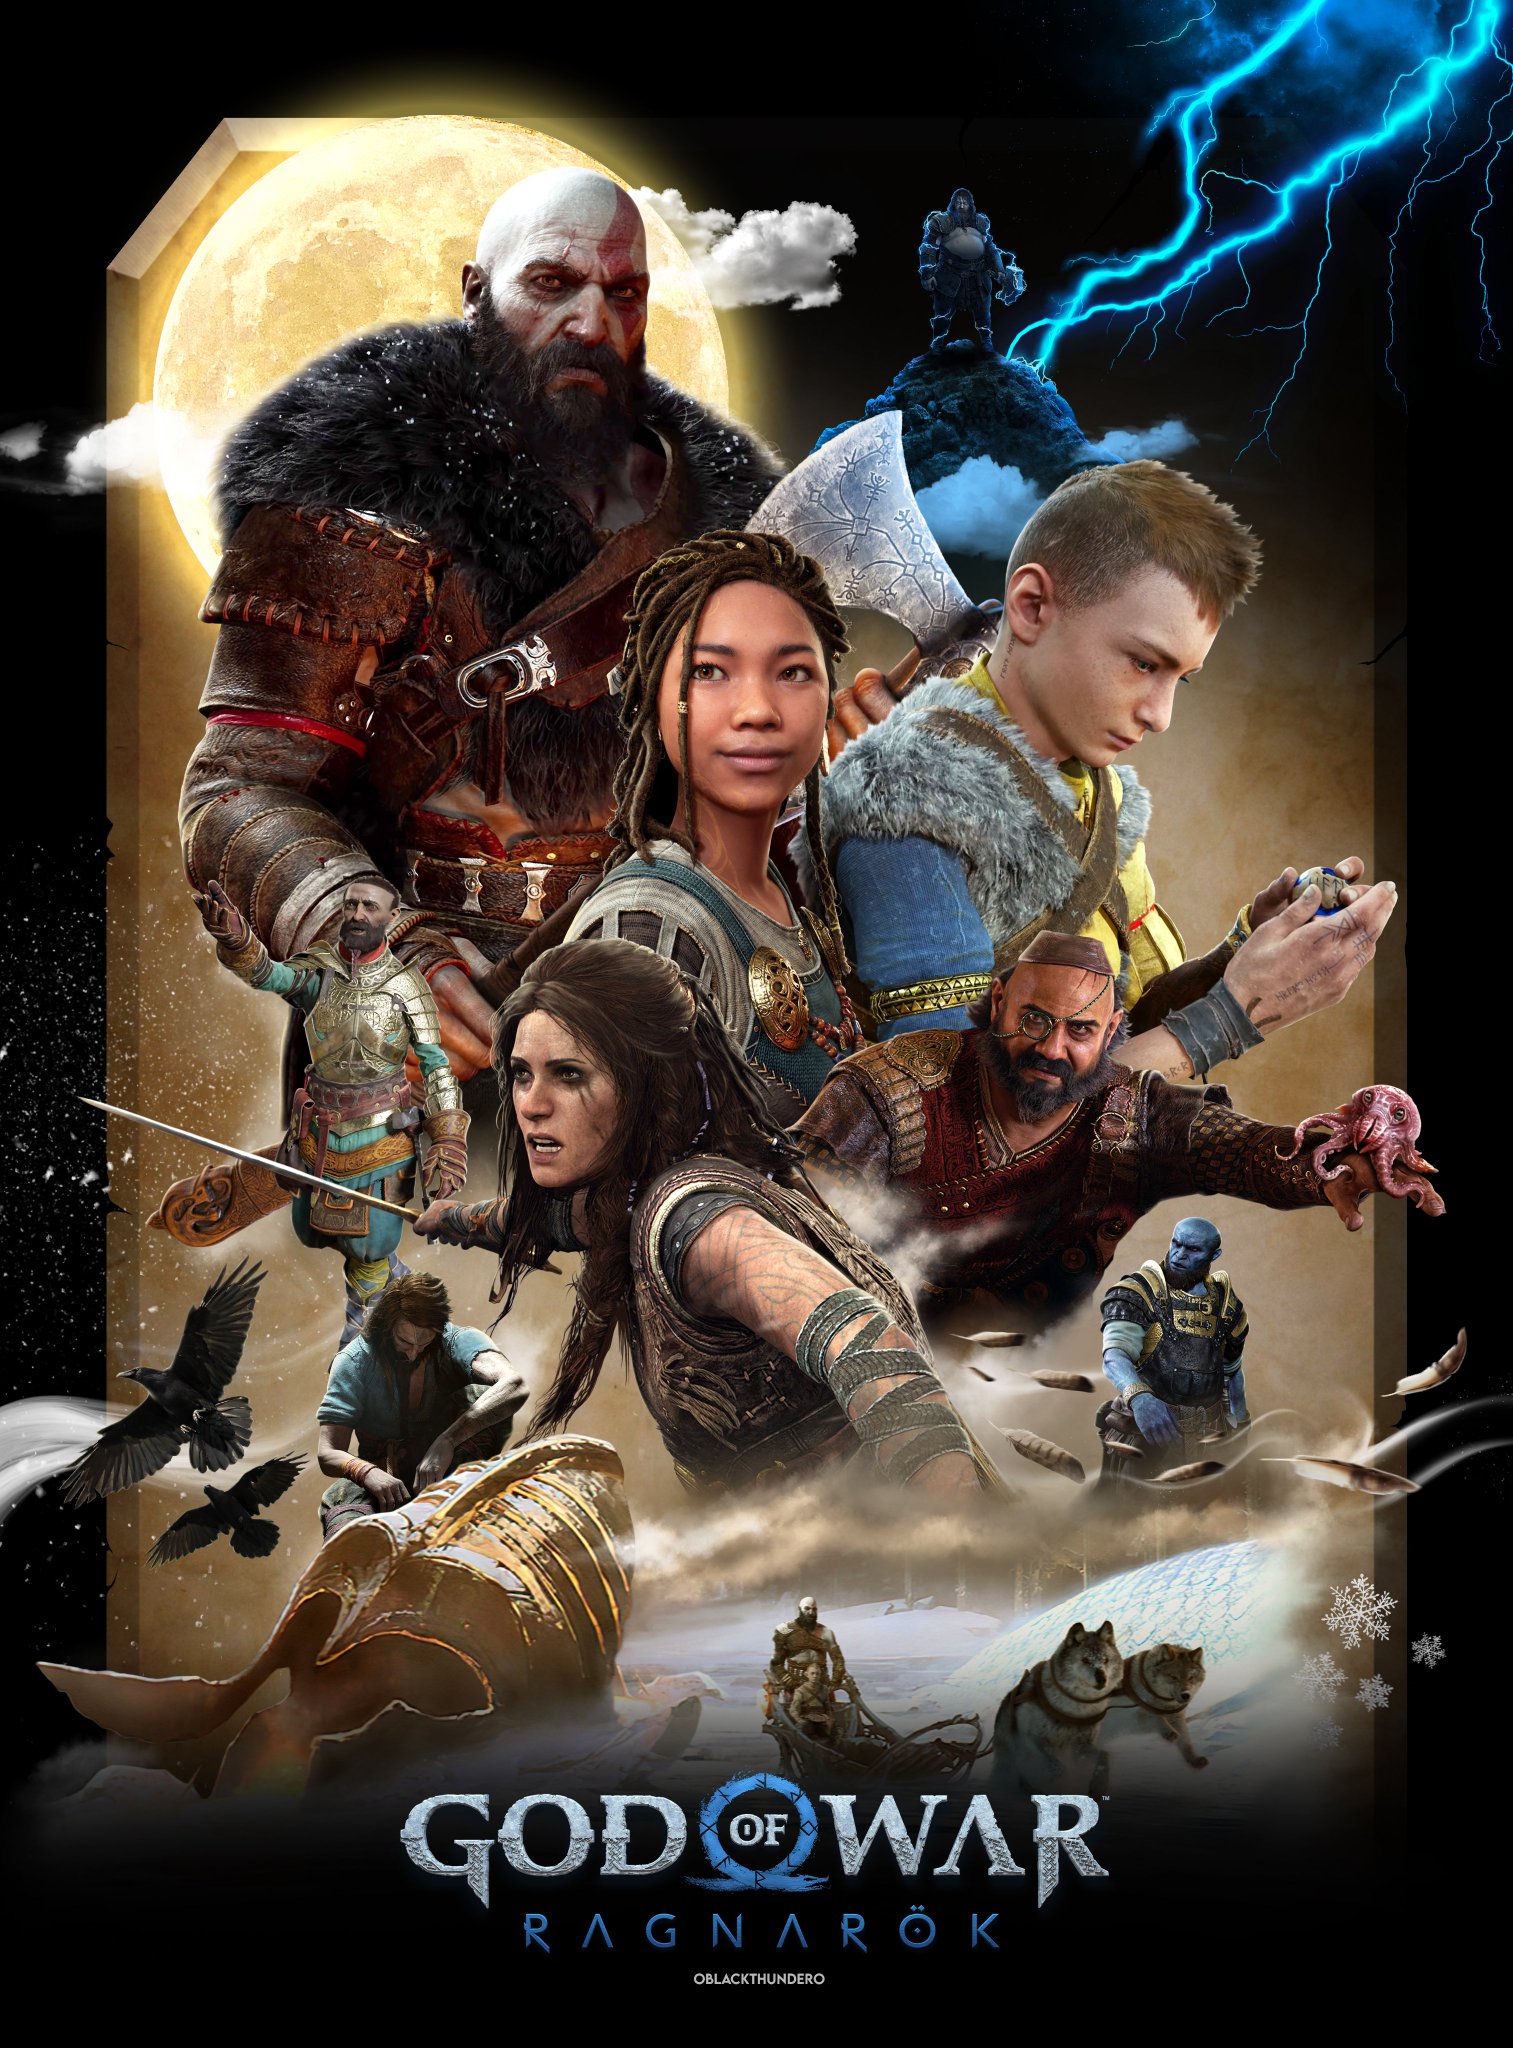 Black Thunder ⚡️ on X: God of War V⚡ Ragnarok is Coming #GodofWar  #RagnarokIsComing #PS5  / X